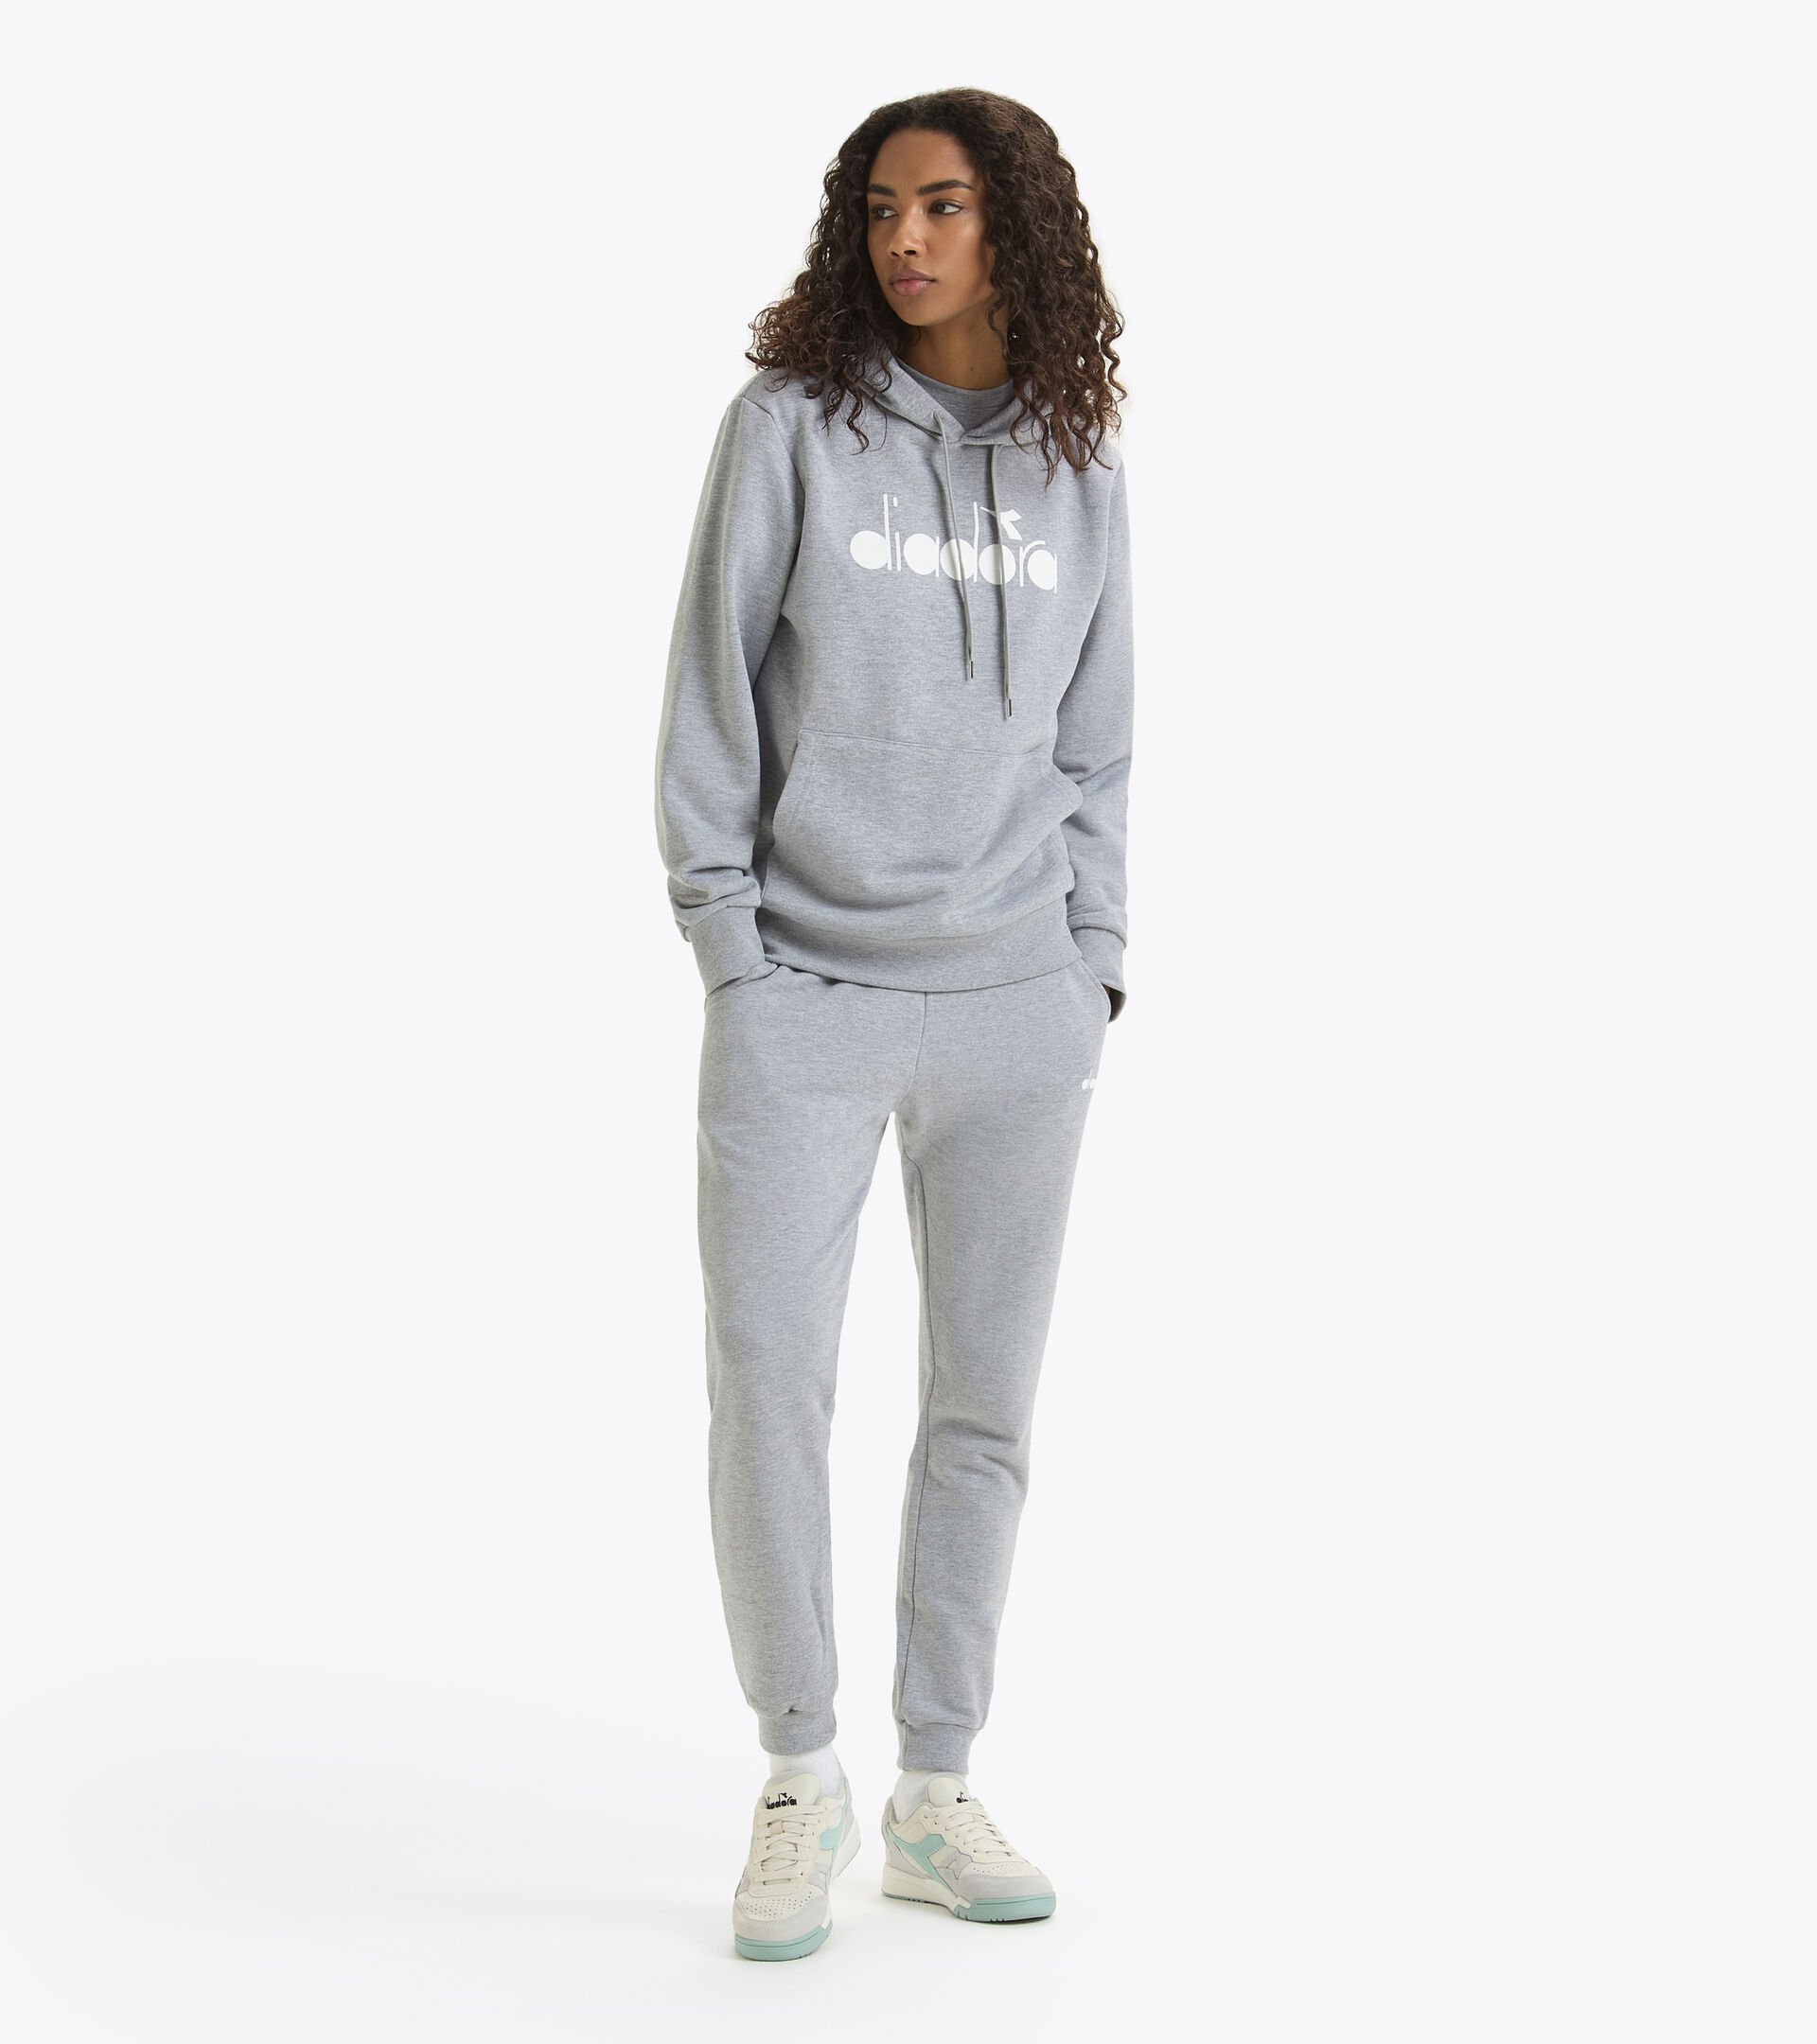 Sporty hoodie - Made in Italy - Gender Neutral HOODIE LOGO HIGH RISE MELANGE - Diadora